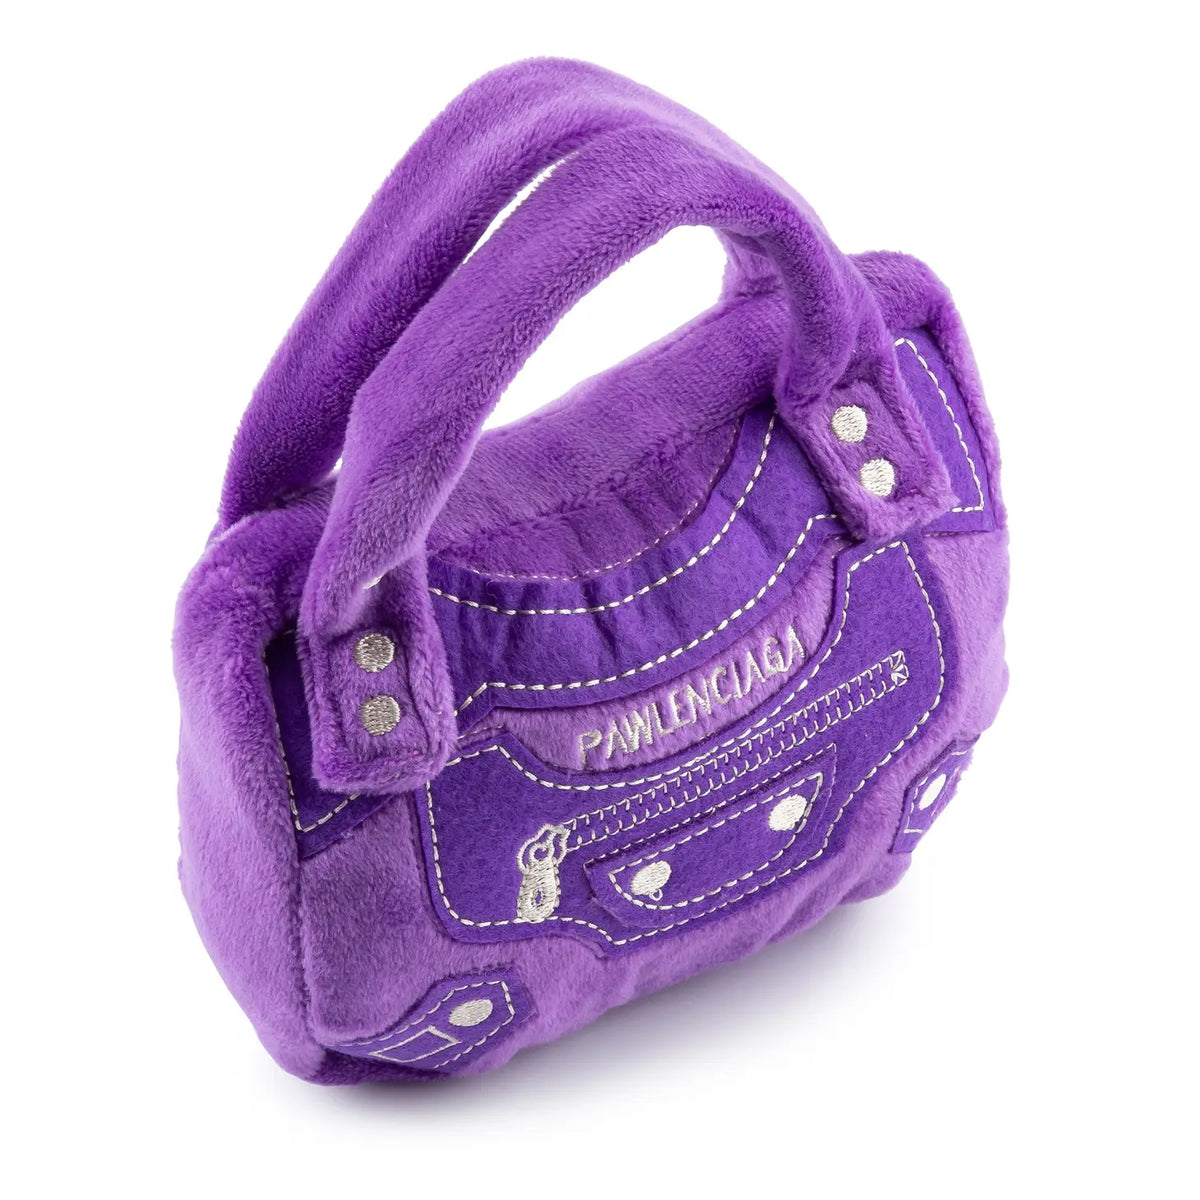 Pawlenciaga Handbag Plush Dog Toy